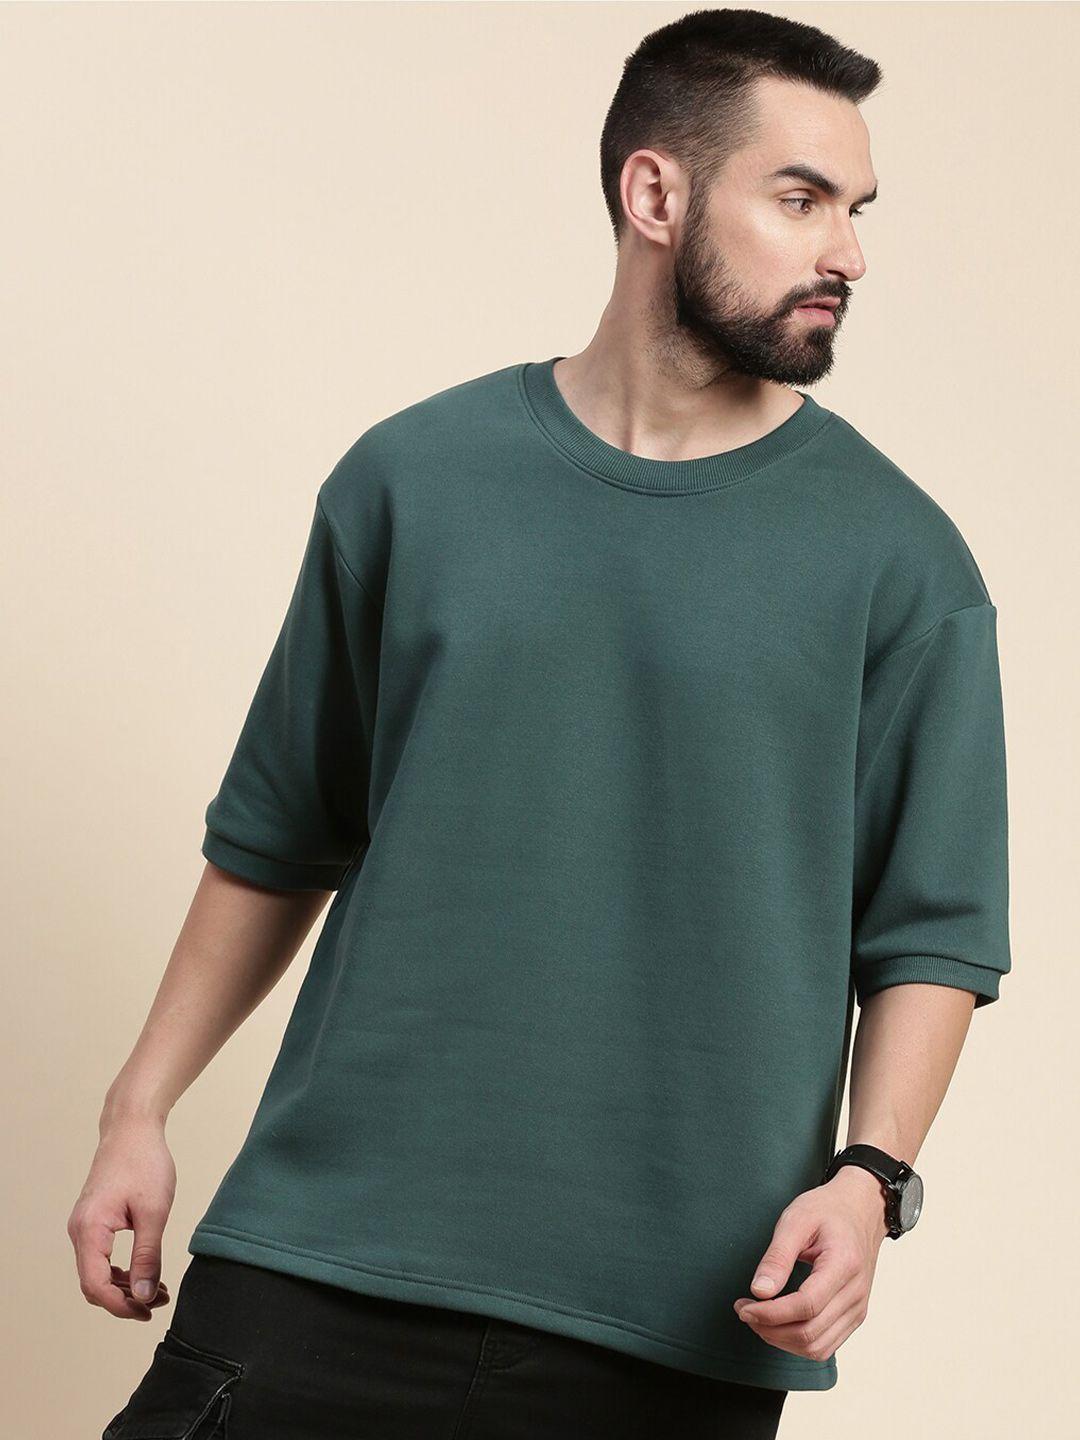 dillinger-men-green-sweatshirt